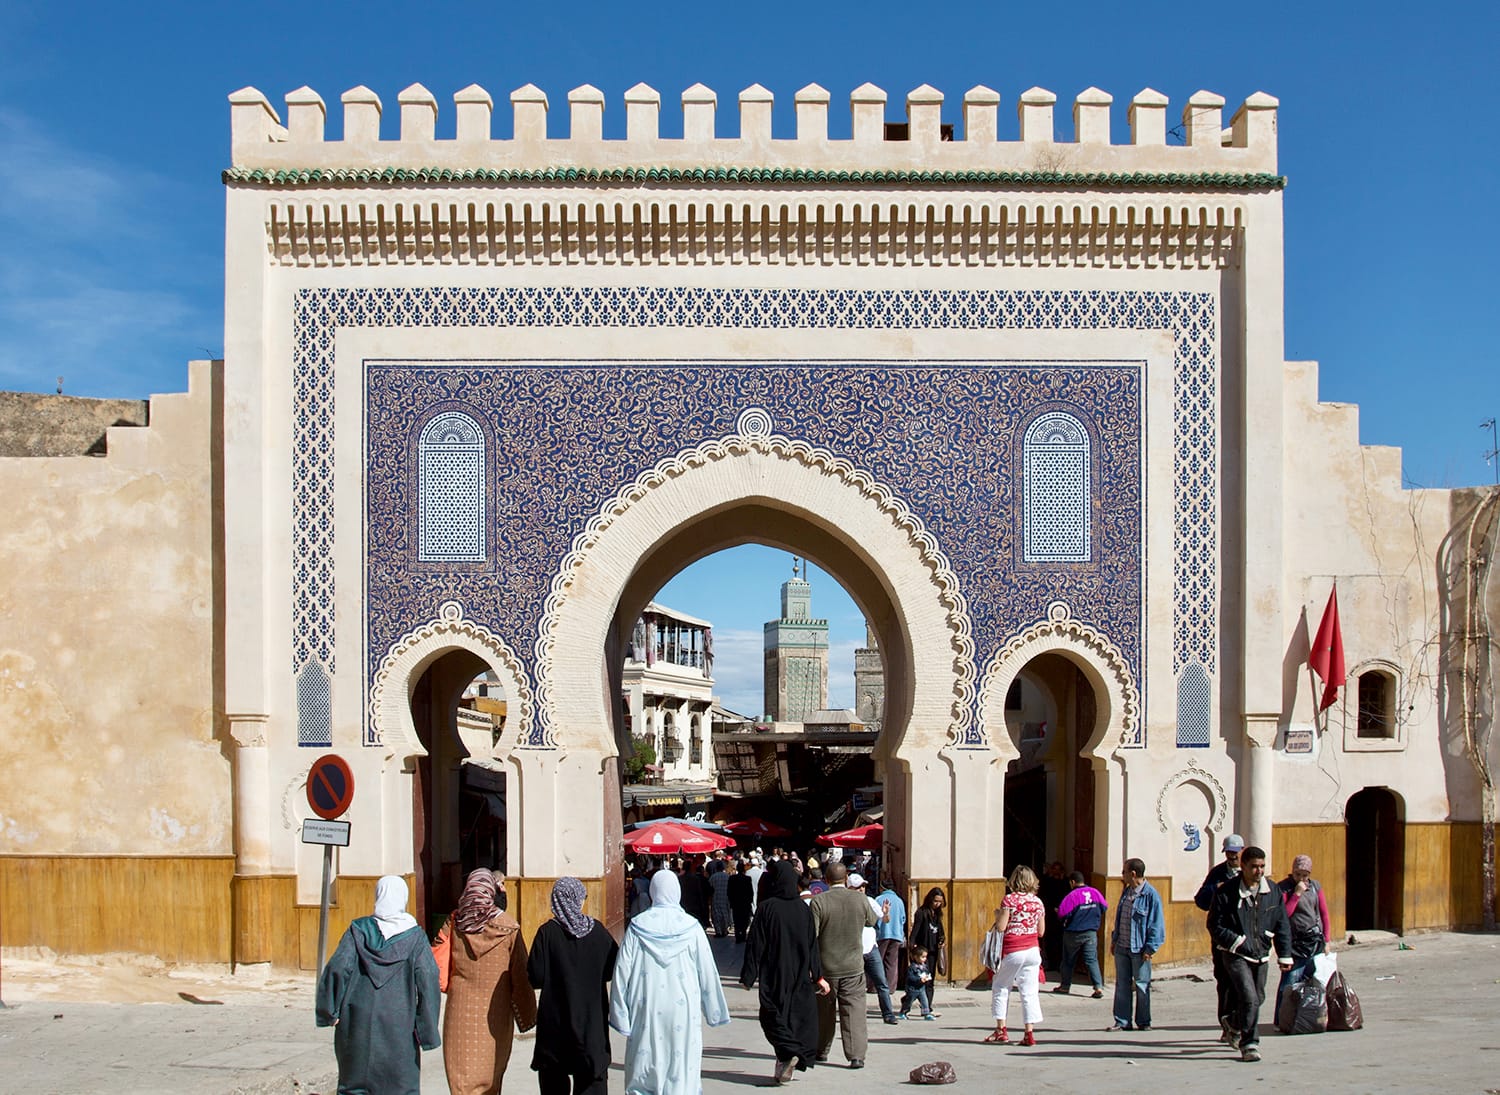 Bab Bou Jeloud gate (blue gate), Fez, Morocco